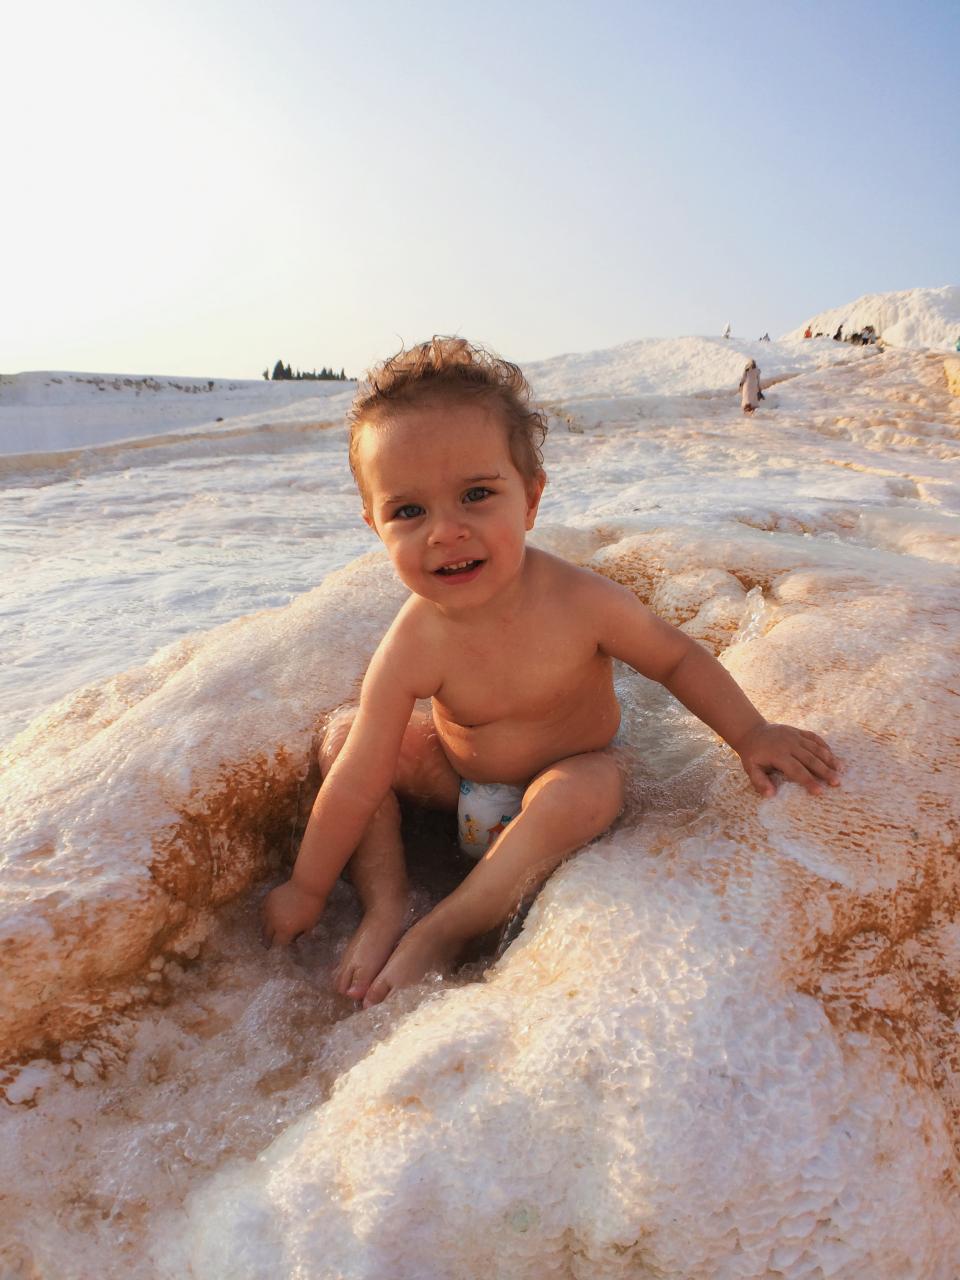 waves water sand kid diaper child boy beach baby 